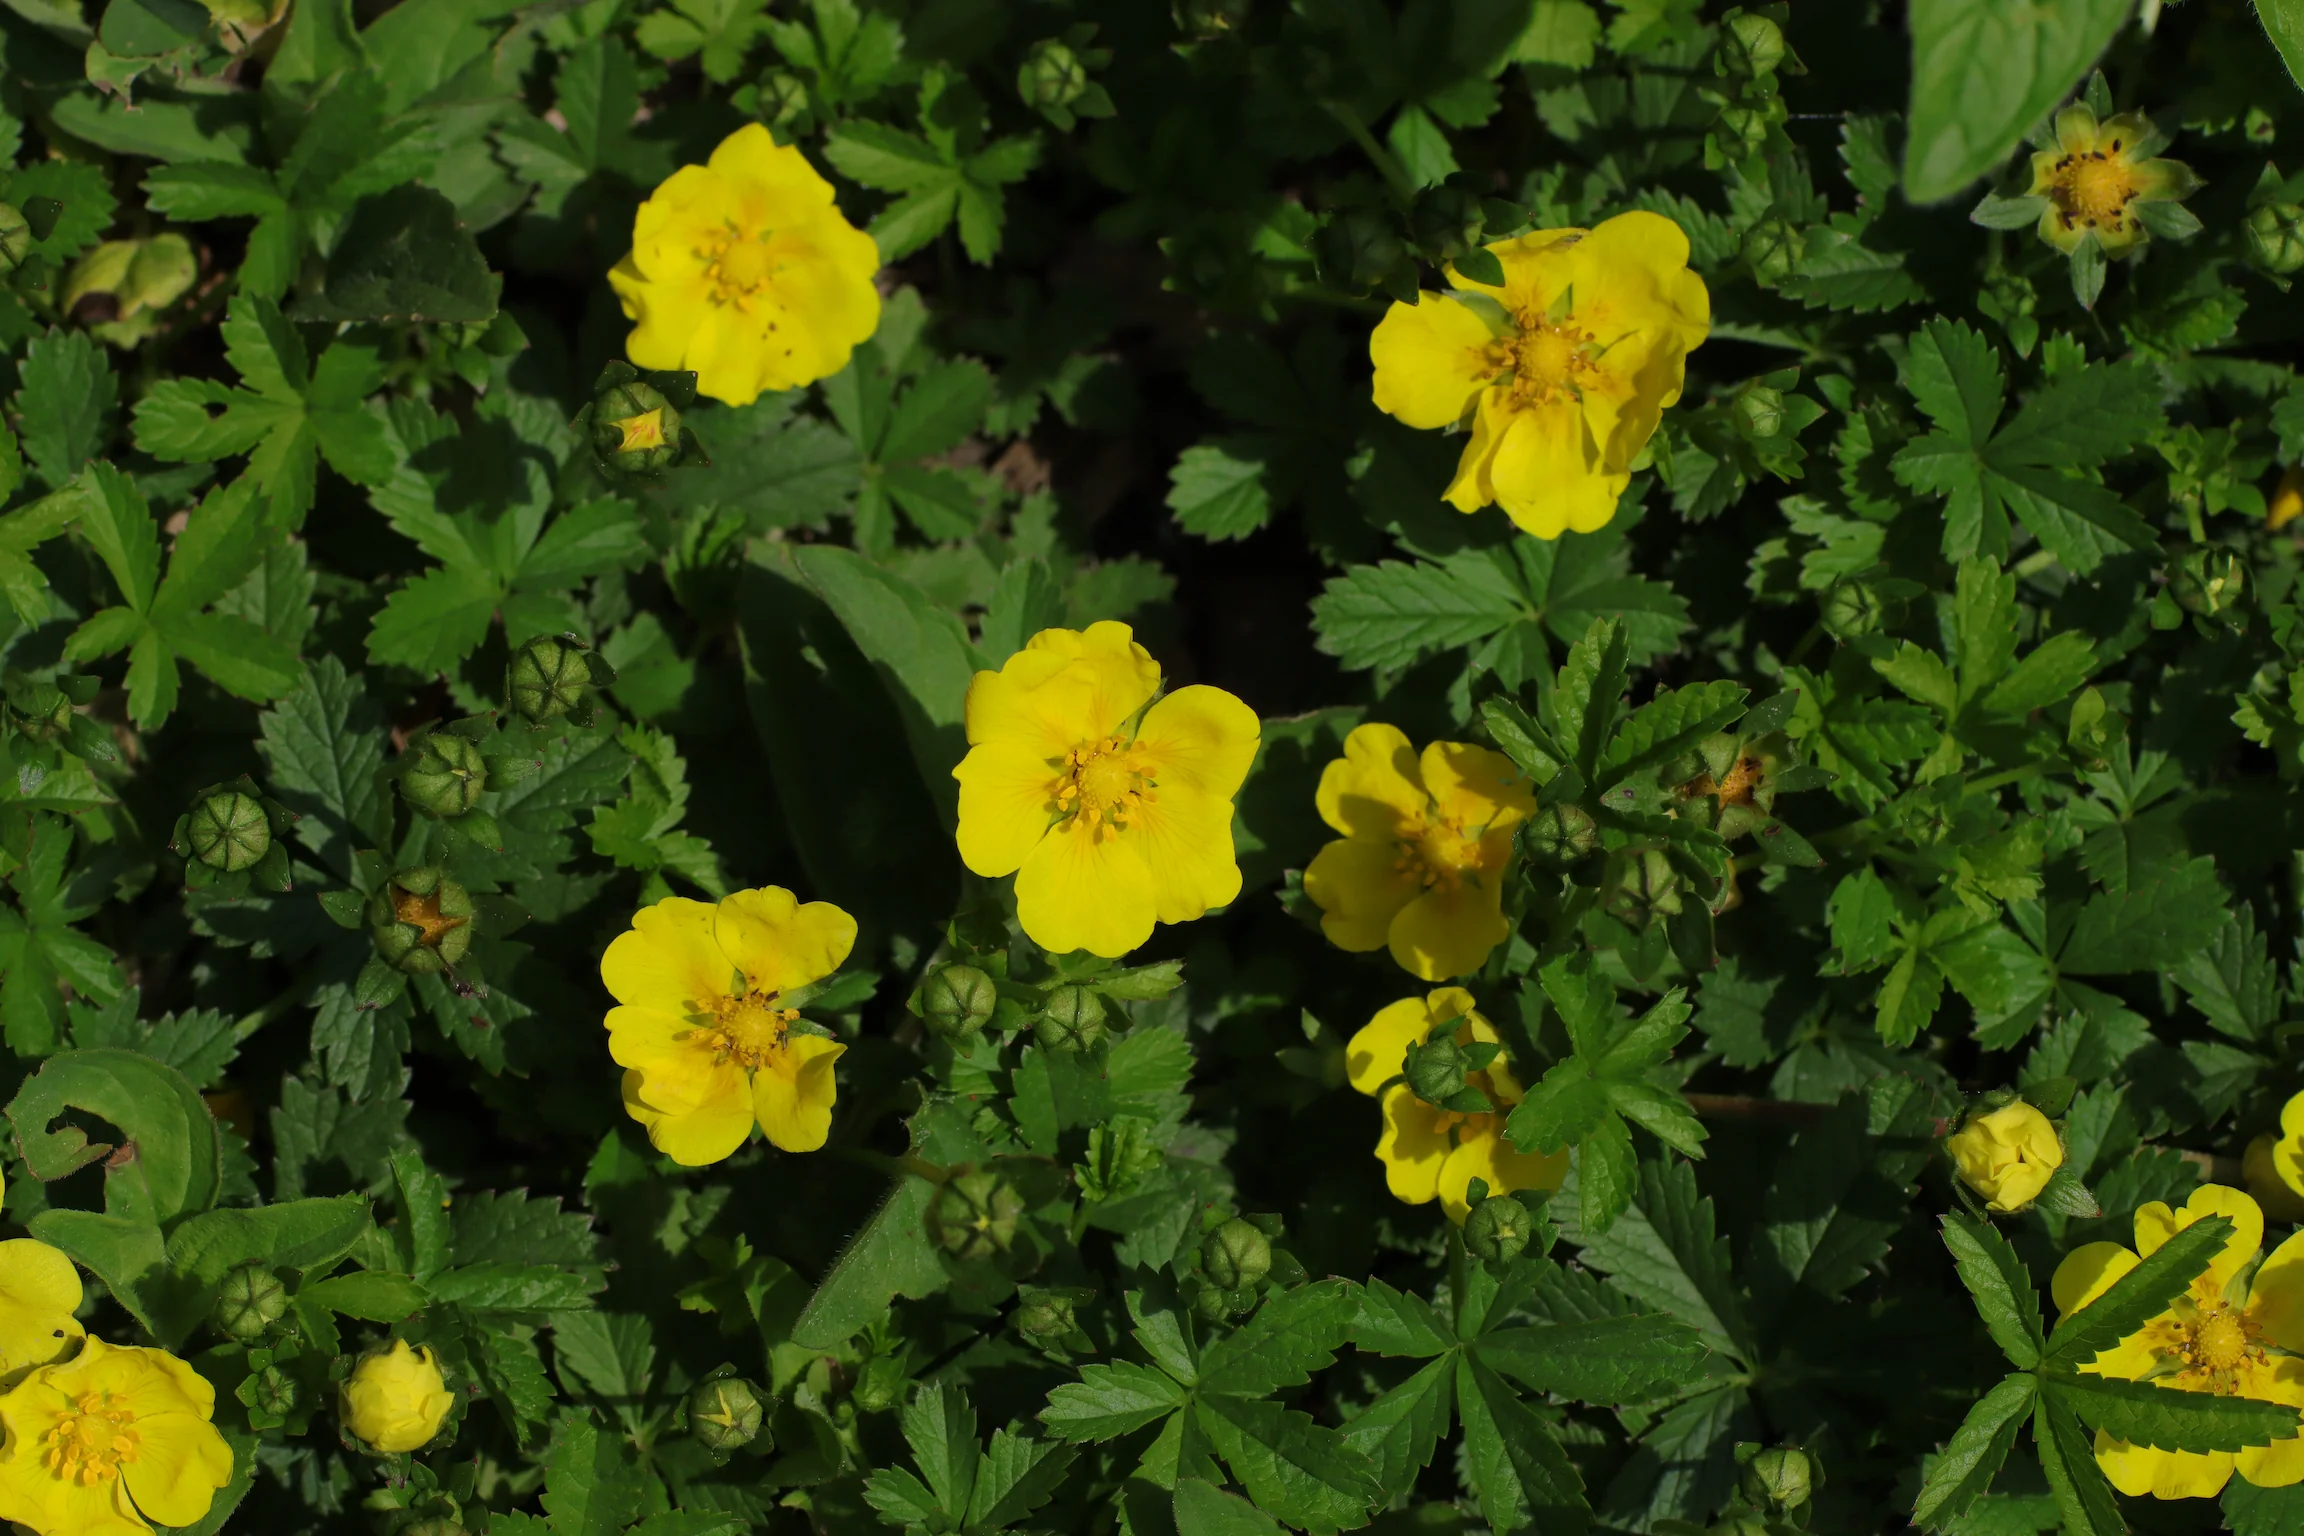 Die goldgelben Blüten sitzen zwischen den grünen, fünffiedrigen Blättern - kriechendes Fingerkraut breitet sich auf dem Boden aus.